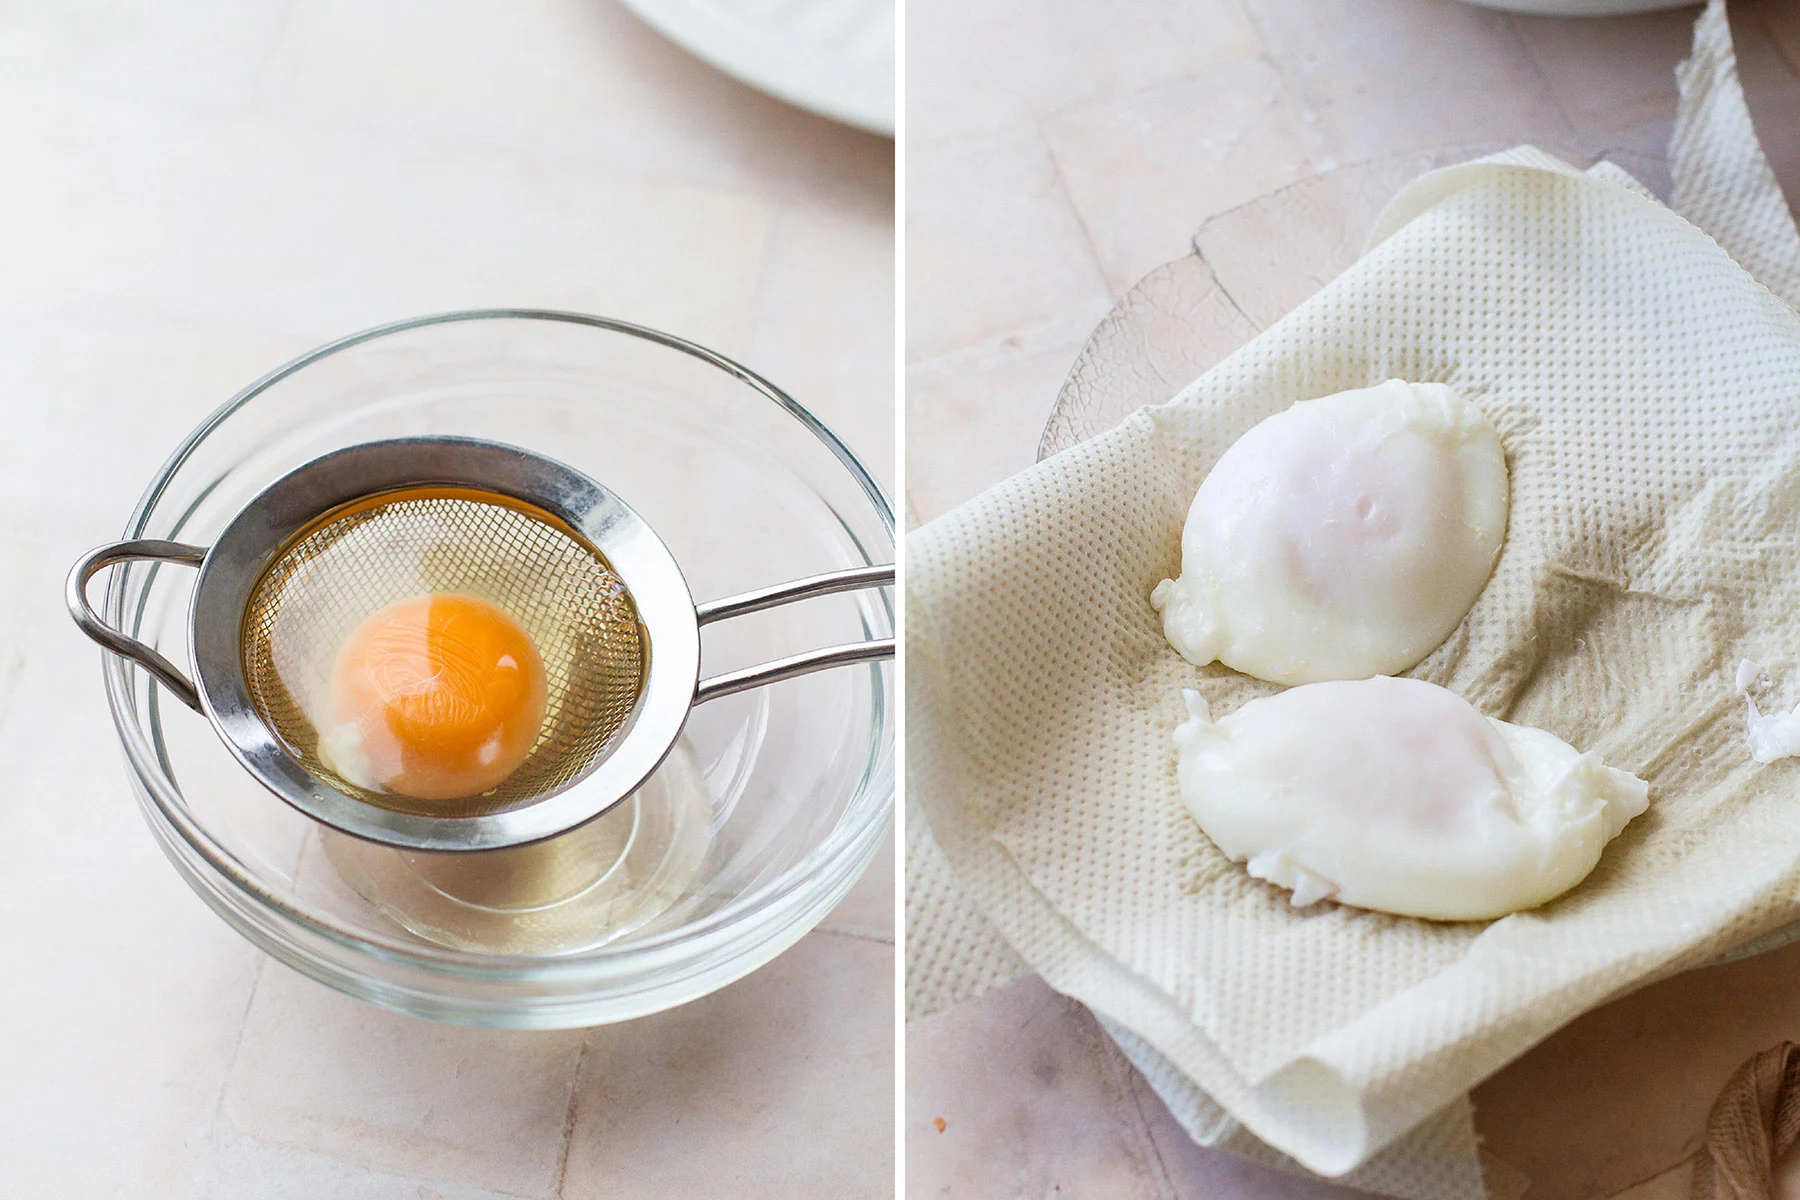 Steps to poach eggs.